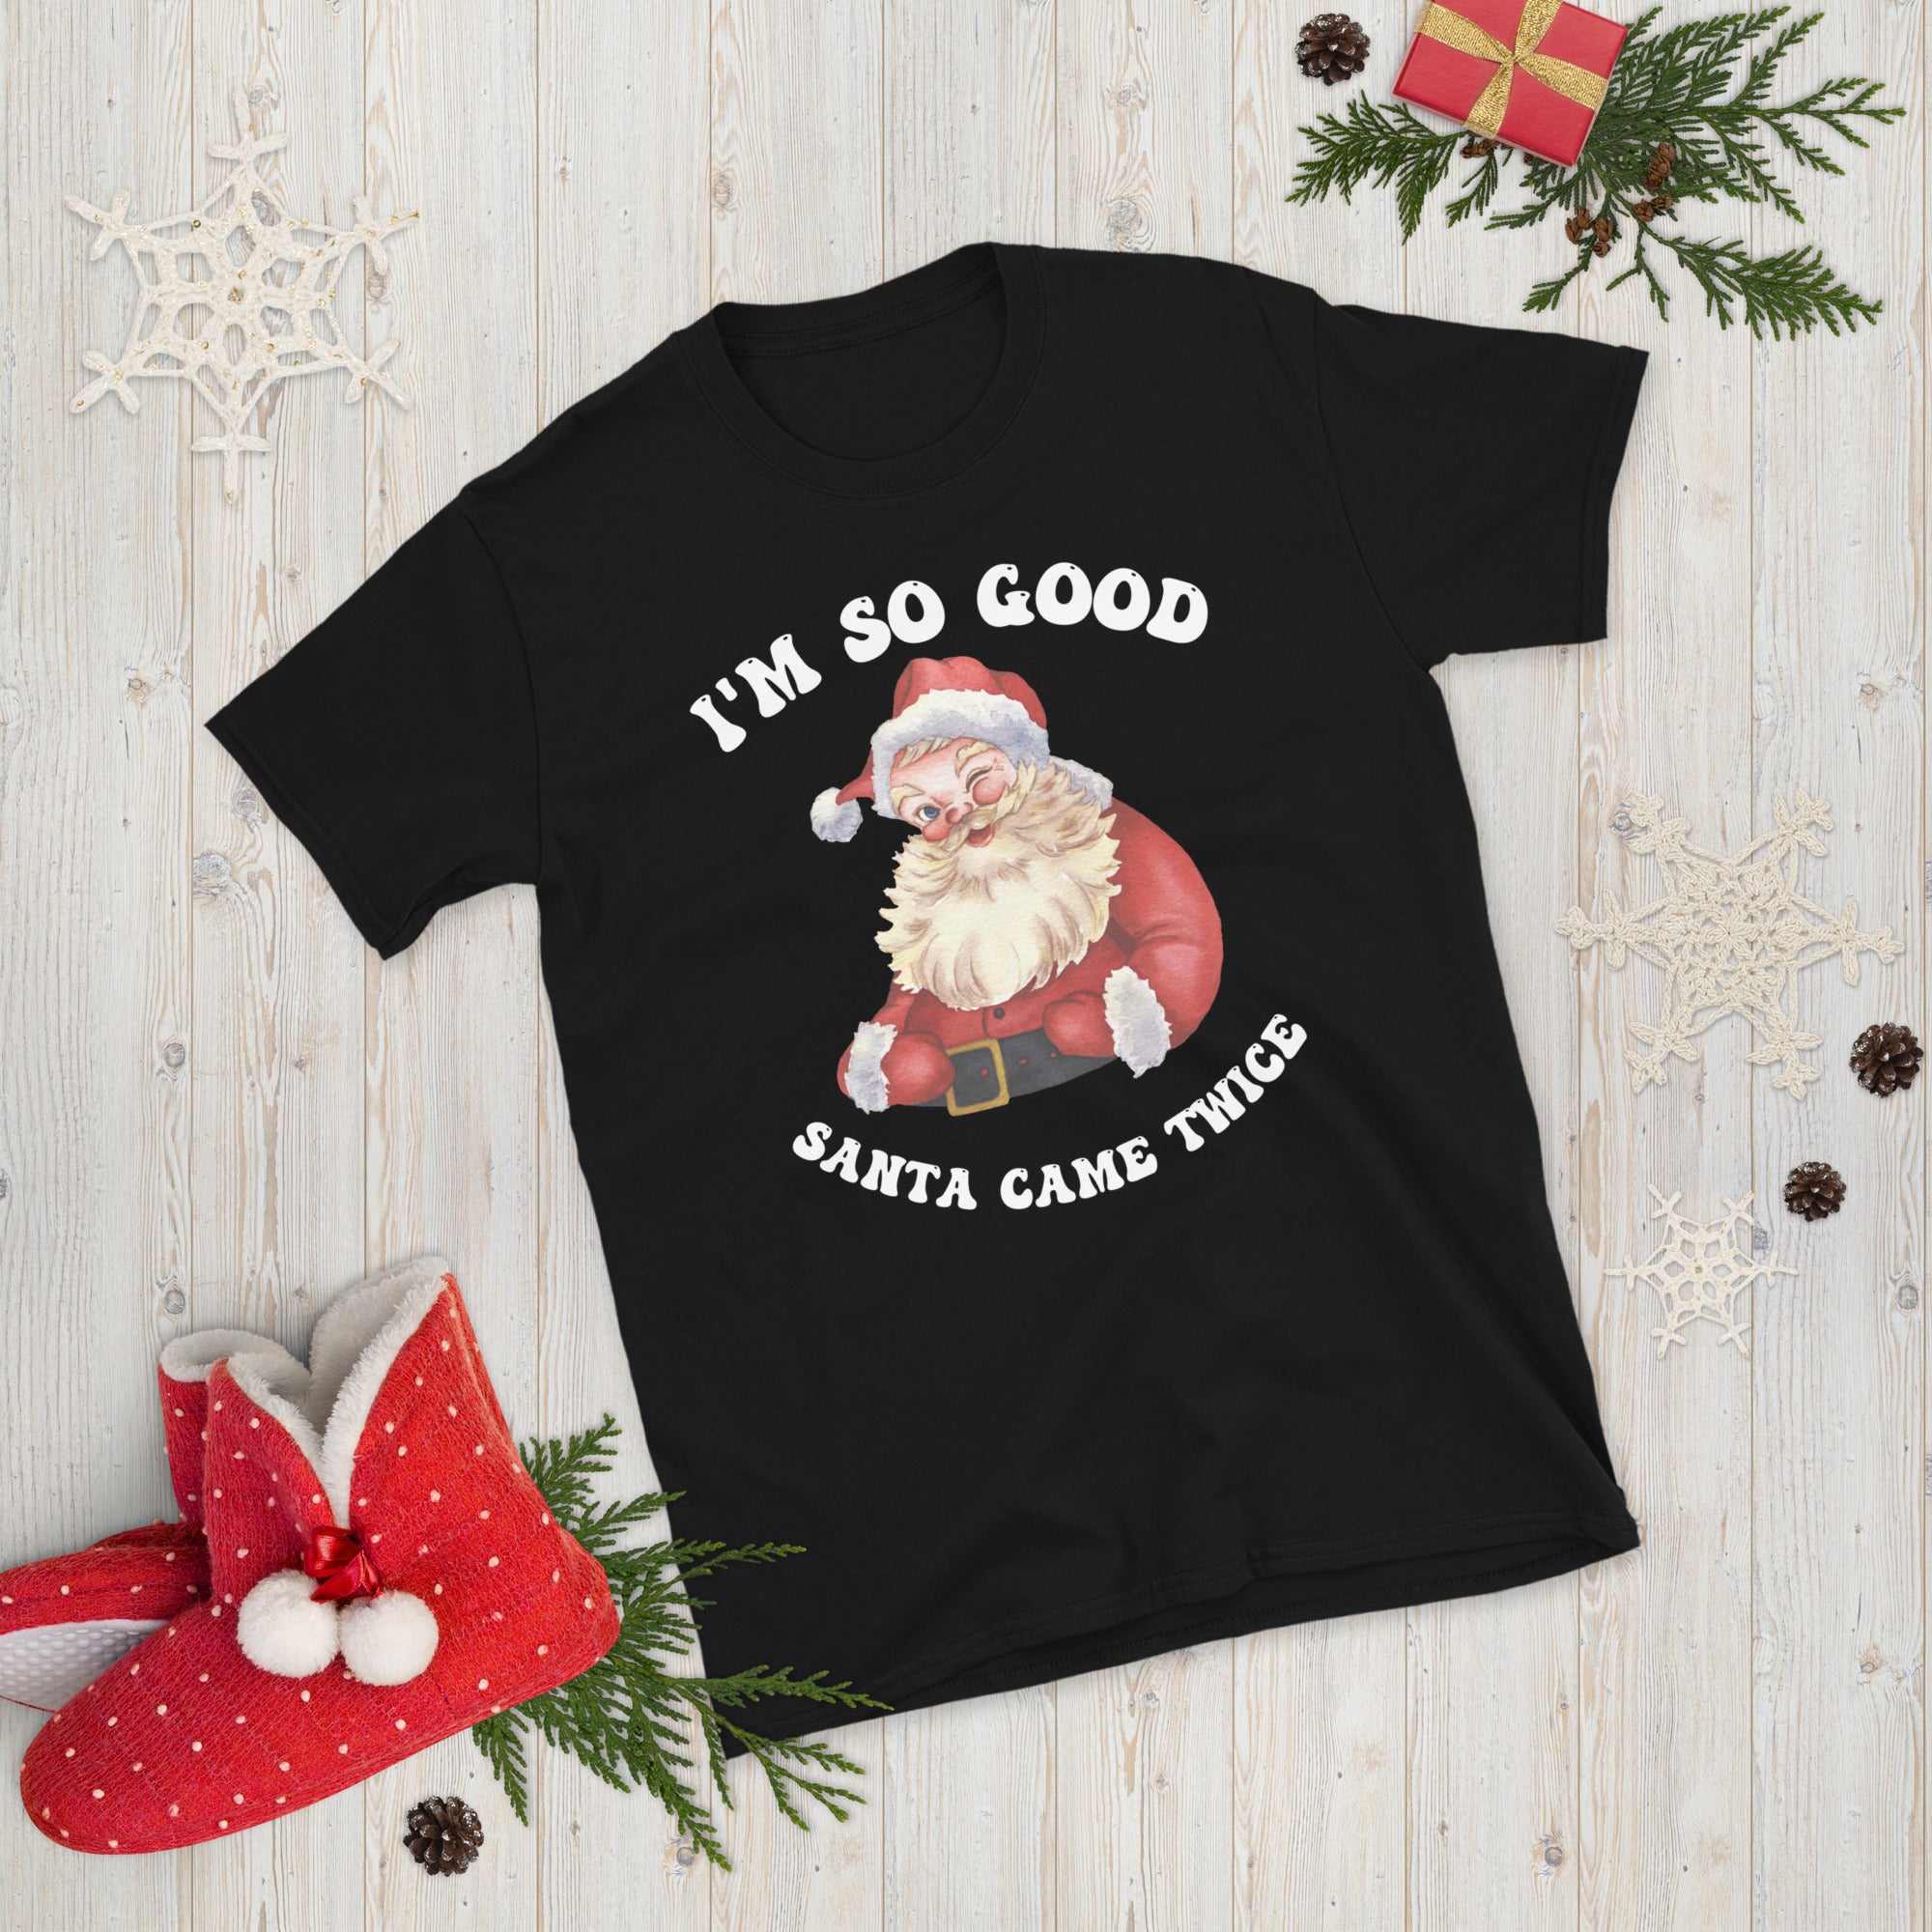 Naughty Couple Christmas Shirts, I&#39;m So Good Santa Came Twice Shirt, Couples Ugly Christmas Tees, Groovy Christmas Gifts, Xmas Adult Humour - Madeinsea©